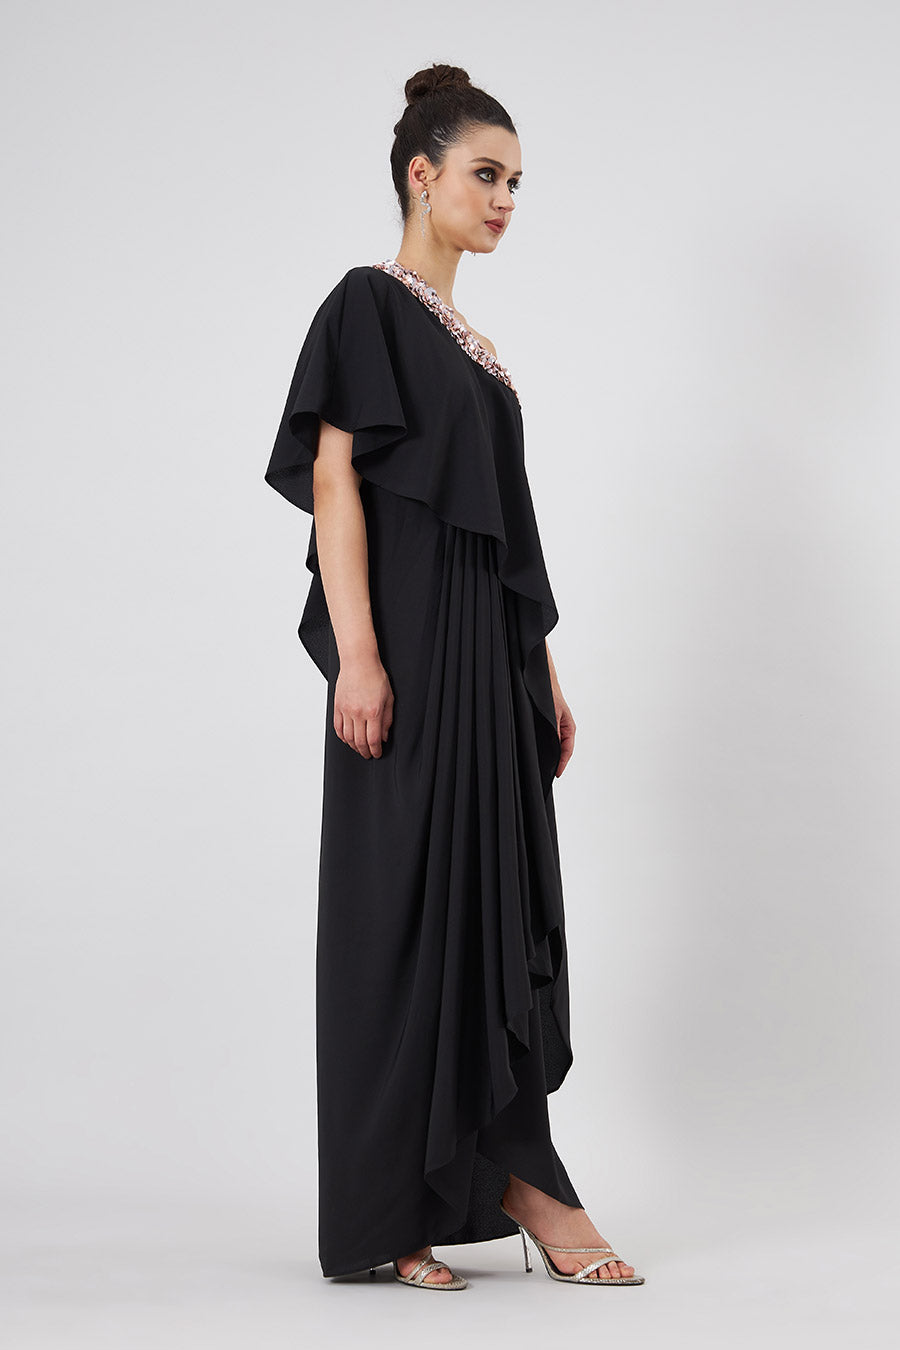 Black Embroidered One-Shoulder Drape Dress